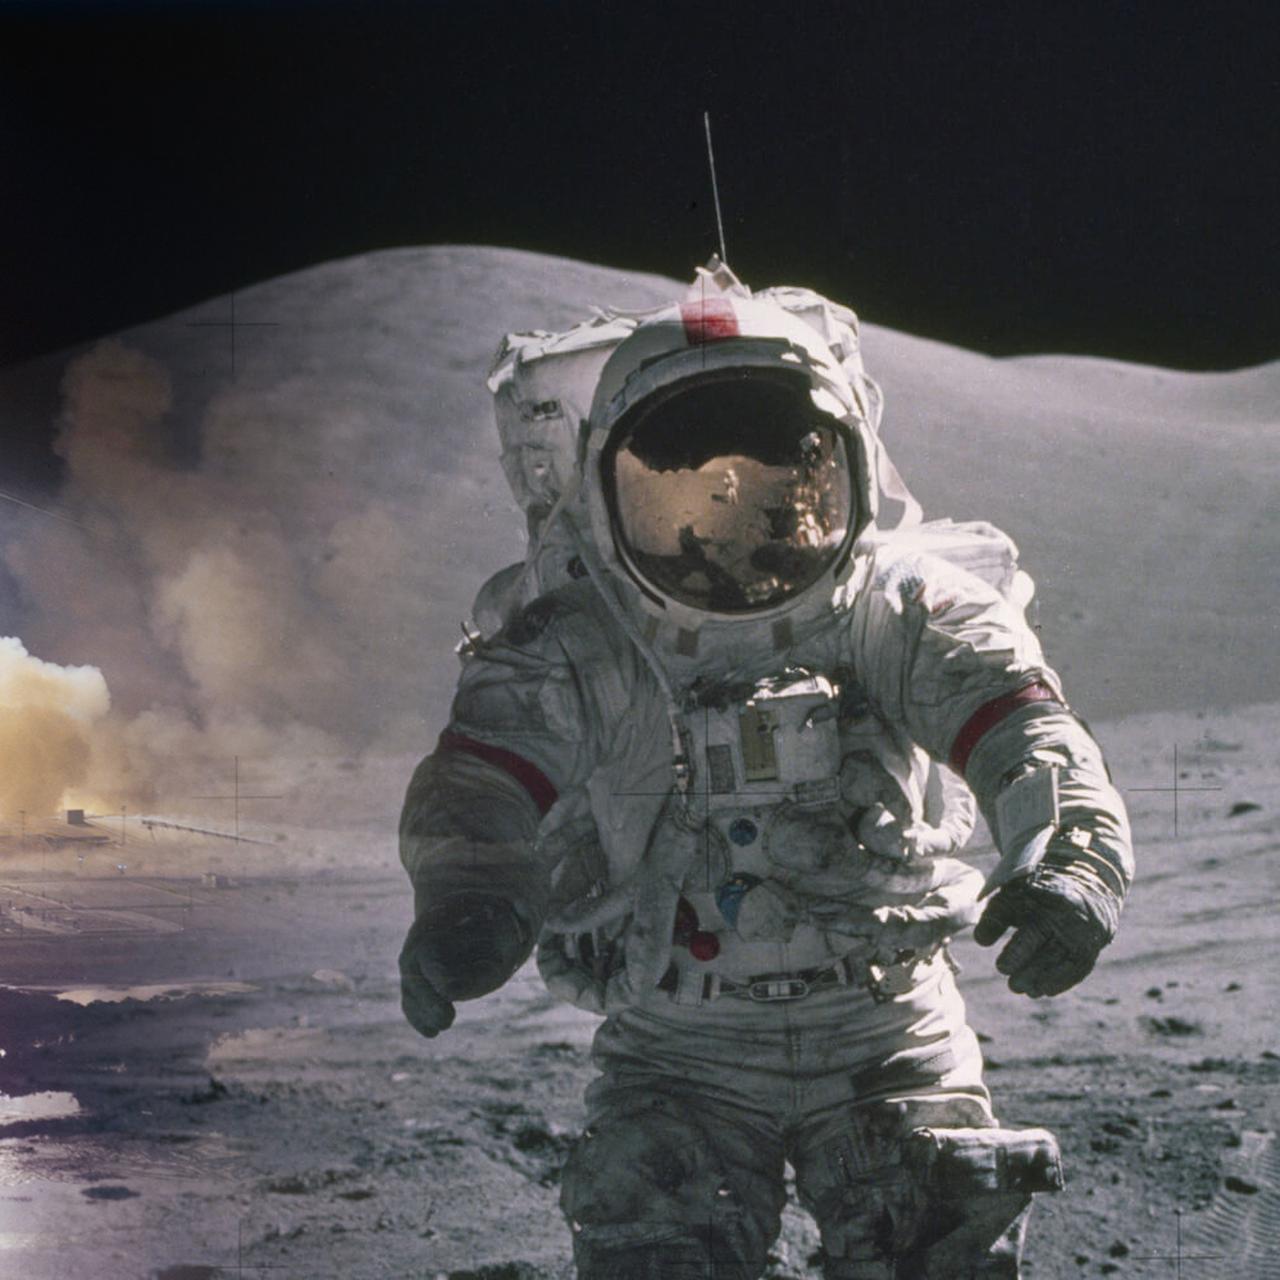 Космонавты высадились на луне